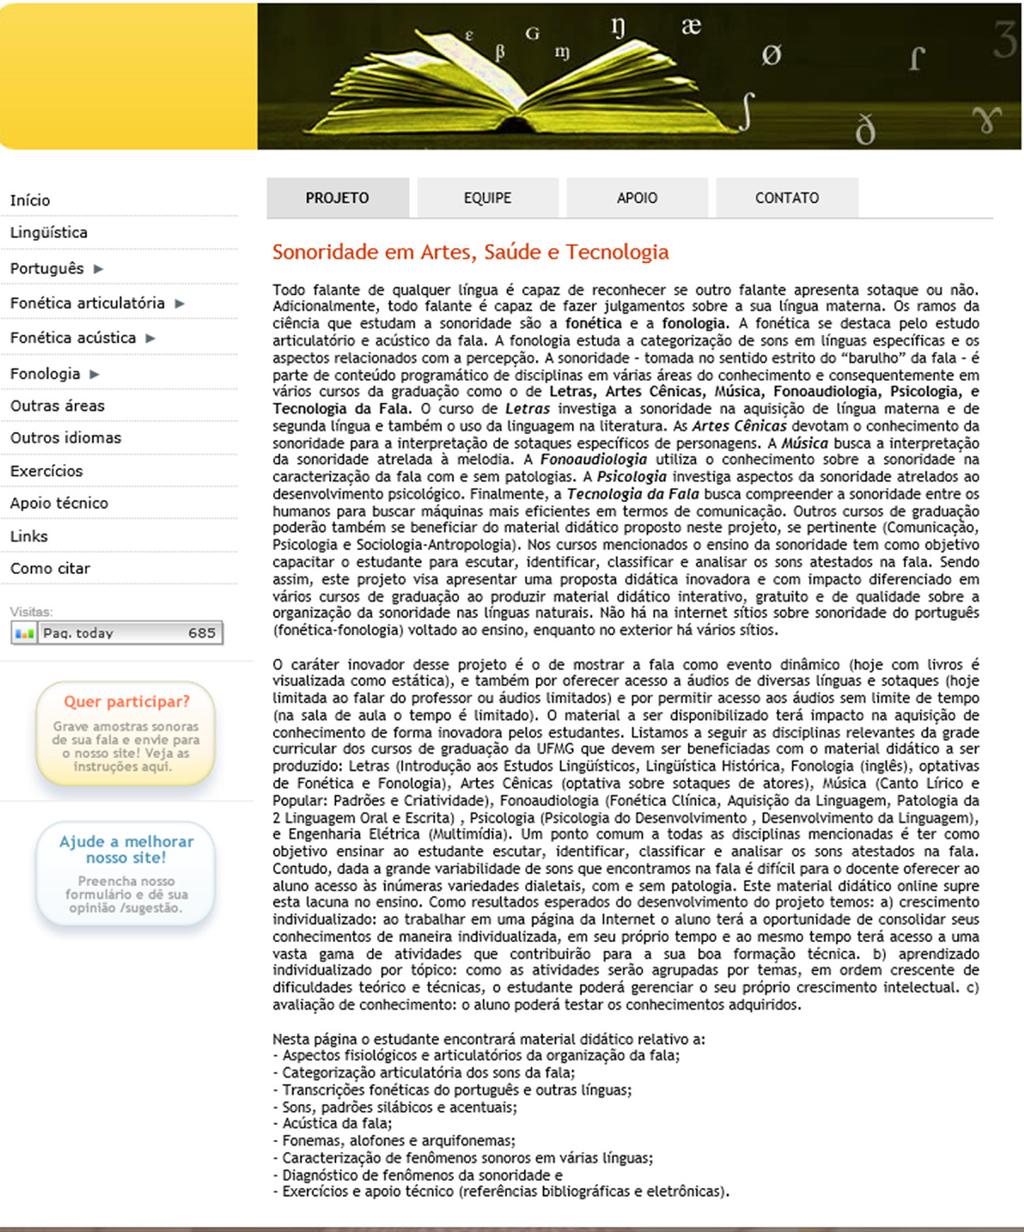 Gramática e Ensino Figura 2: Página inicial do site www.fonologa.